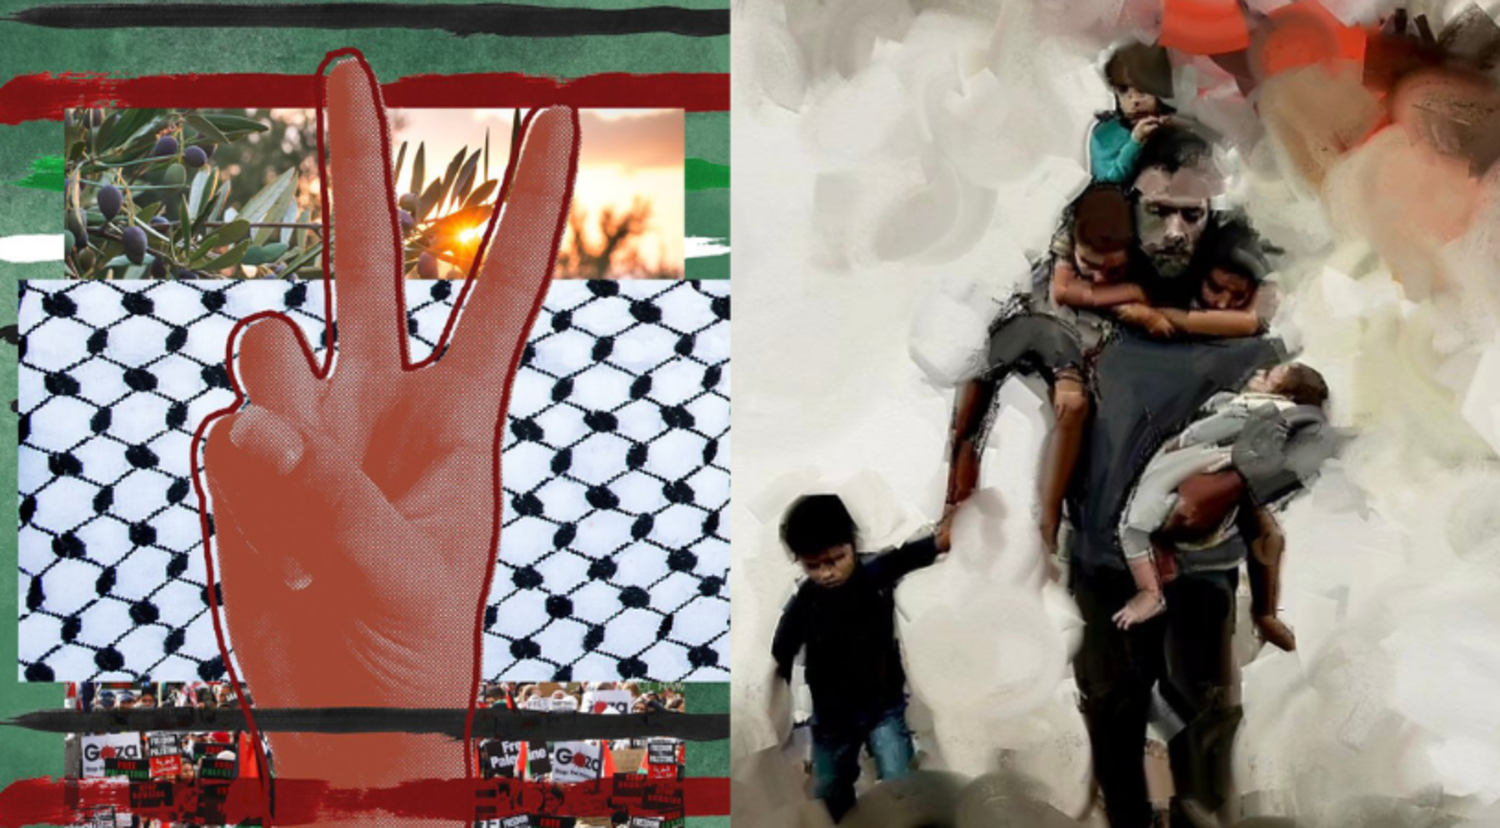 لوحتان لكل من الفنانة الإماراتية فاطمة لوتاه والفنان اللبناني رامي قانصو (إنستغرام)